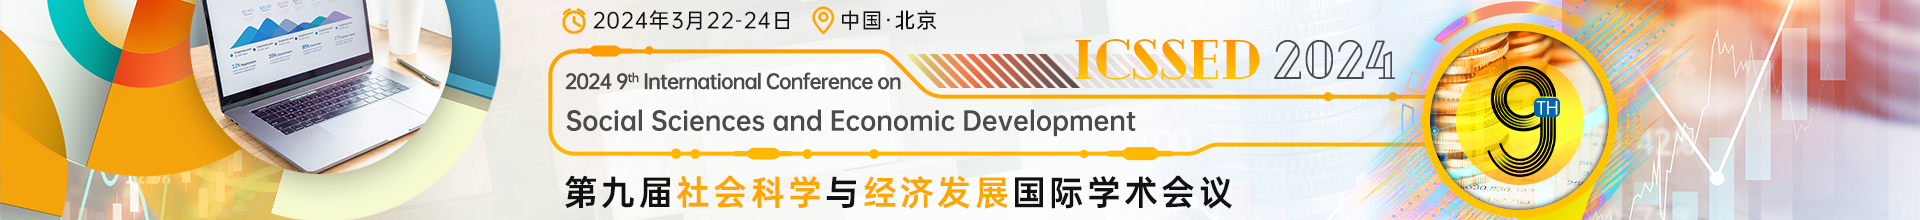 3月-北京ICSSED+2024-会议云banner-20231012.png